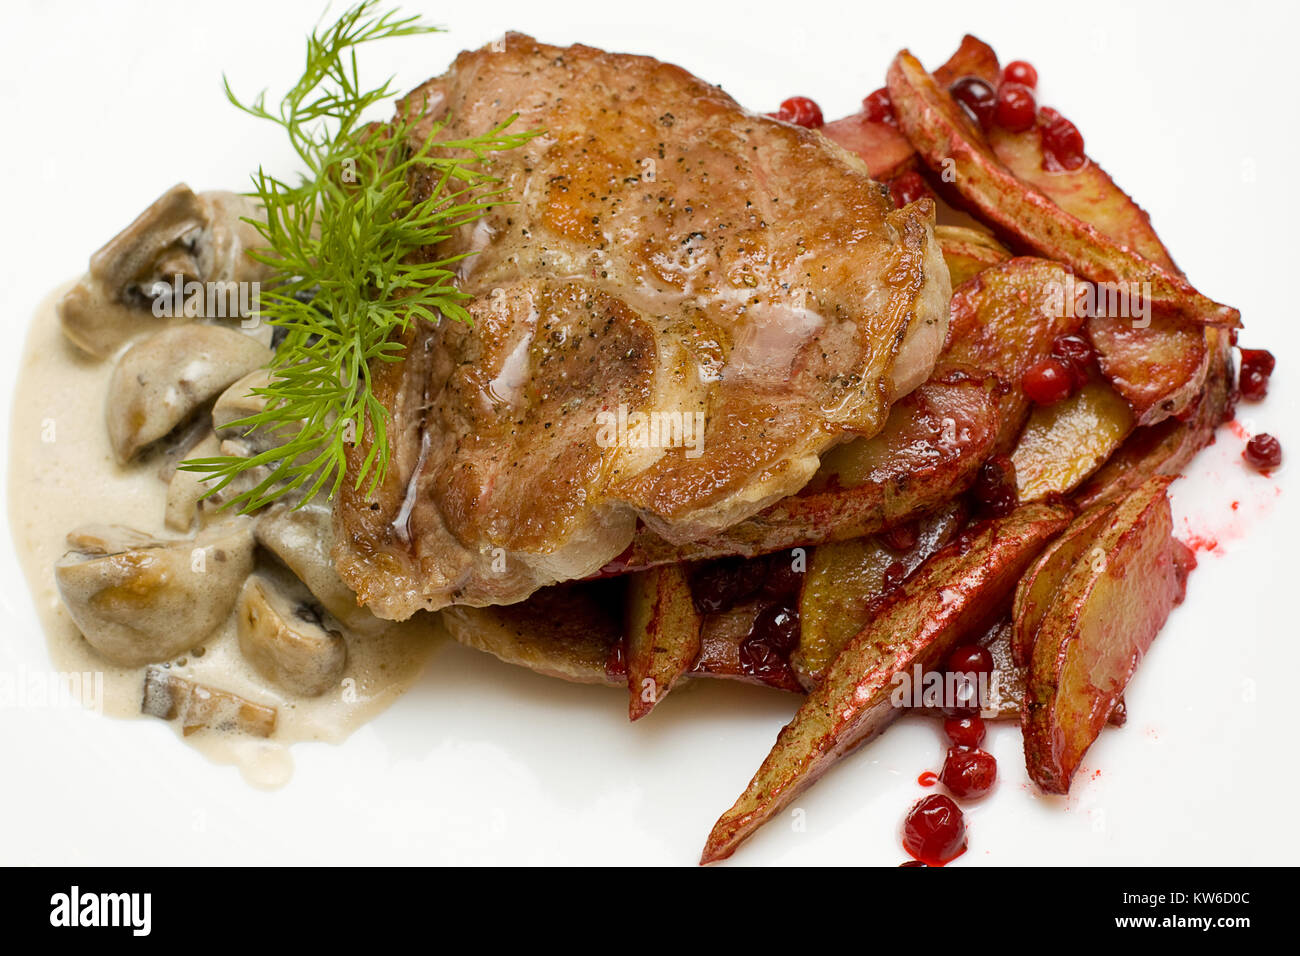 Viande gastronomique avec des canneberges et pommes de terre - cuisine scandinave Banque D'Images